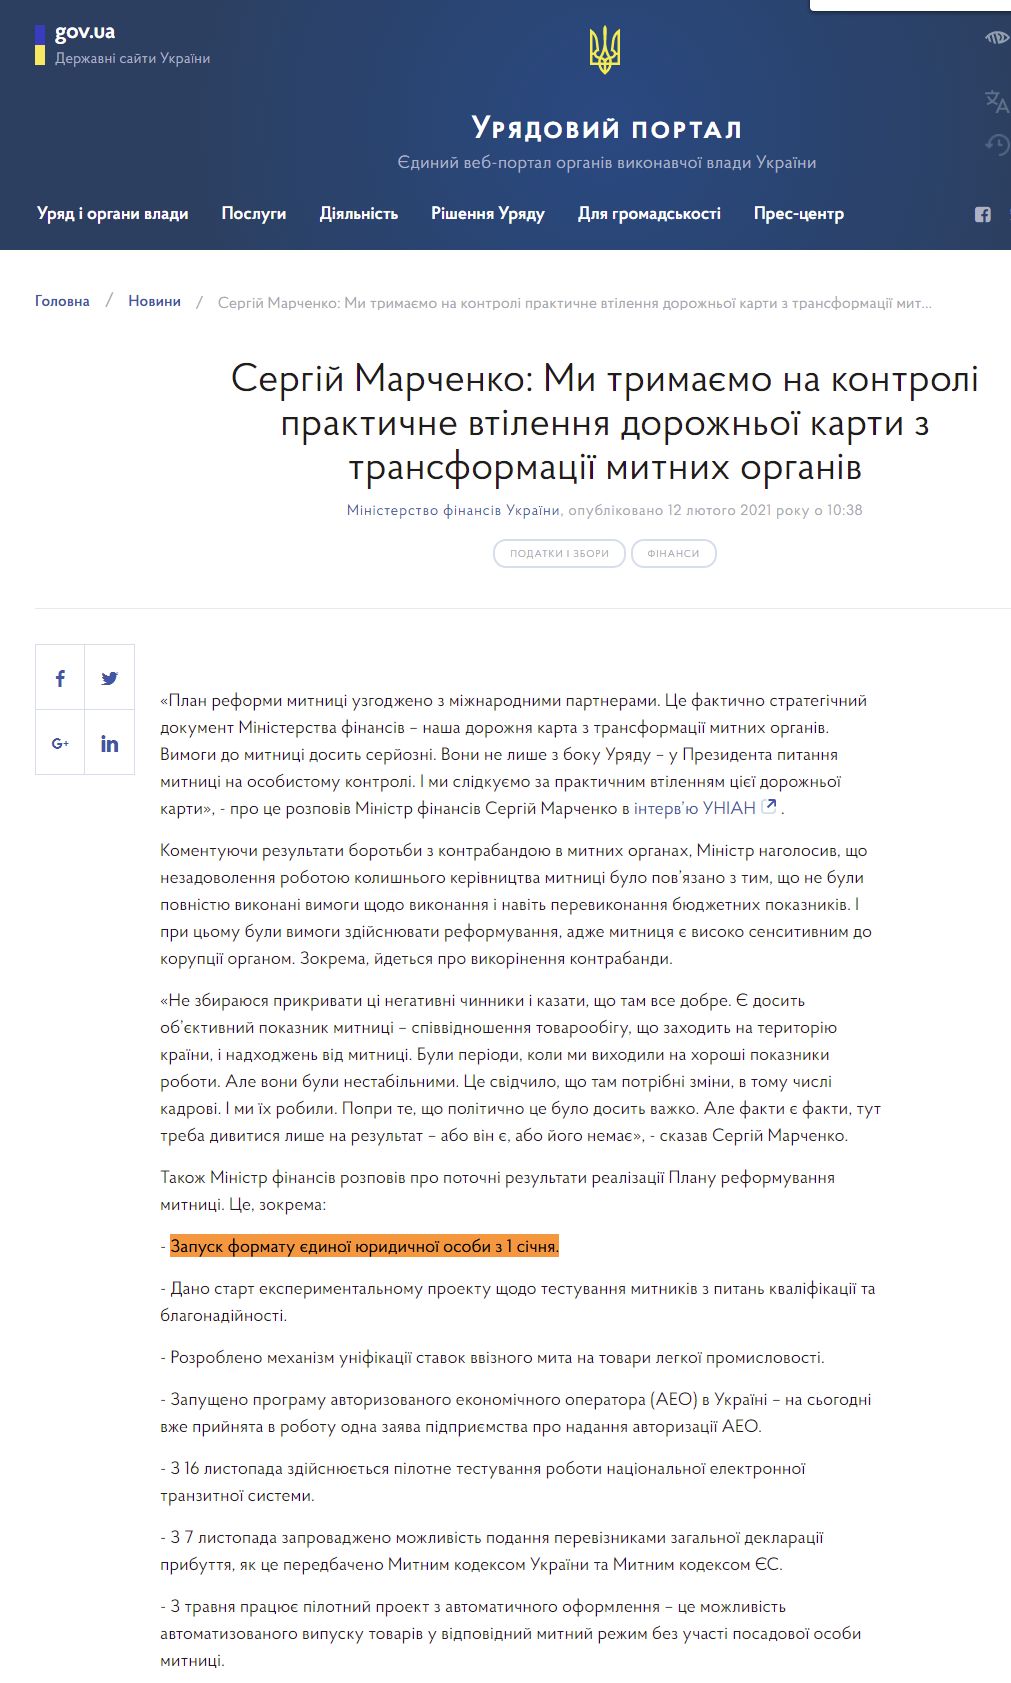 https://www.kmu.gov.ua/news/sergij-marchenko-mi-trimayemo-na-kontroli-praktichne-vtilennya-dorozhnoyi-karti-z-transformaciyi-mitnih-organiv